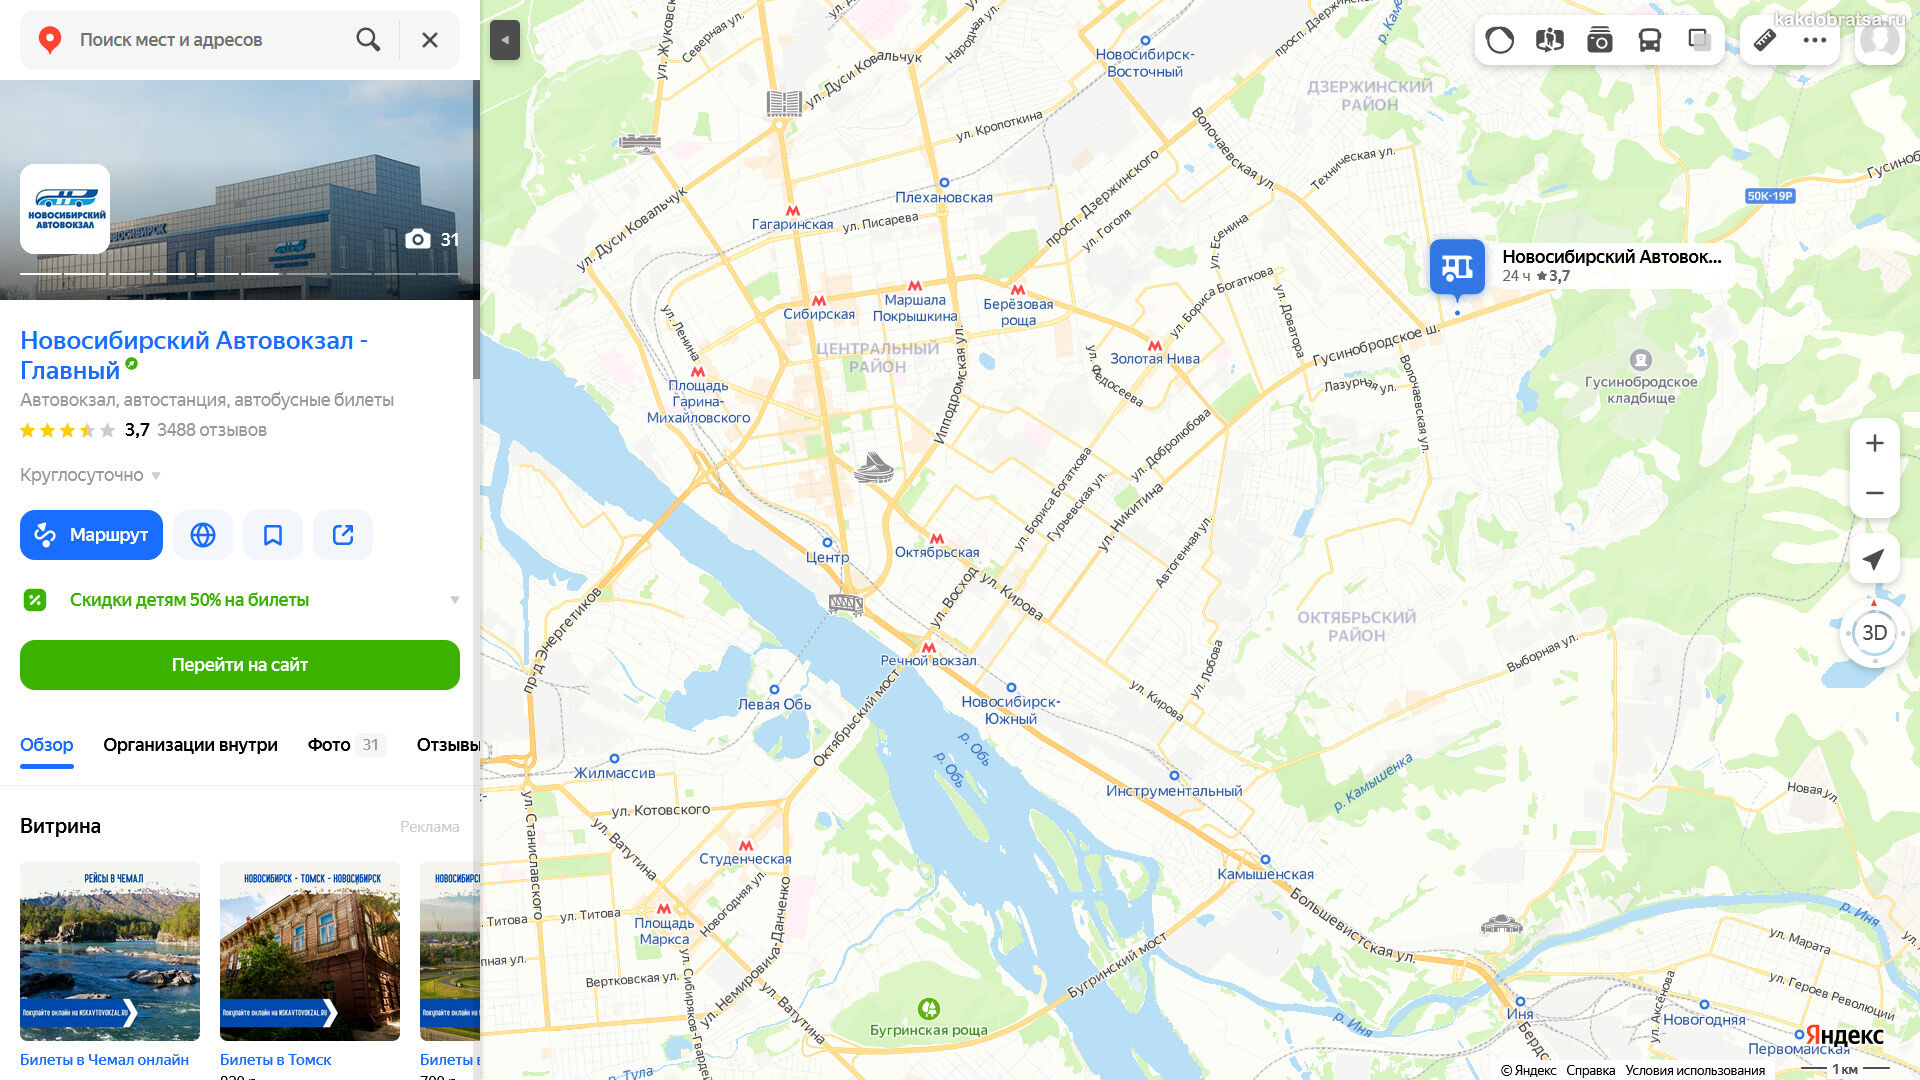 Телефон справочной главного автовокзала. Новосибирский автовокзал главный. Автовокзал в Новосибирске на карте. Новосибирск автовокзал главный карта.